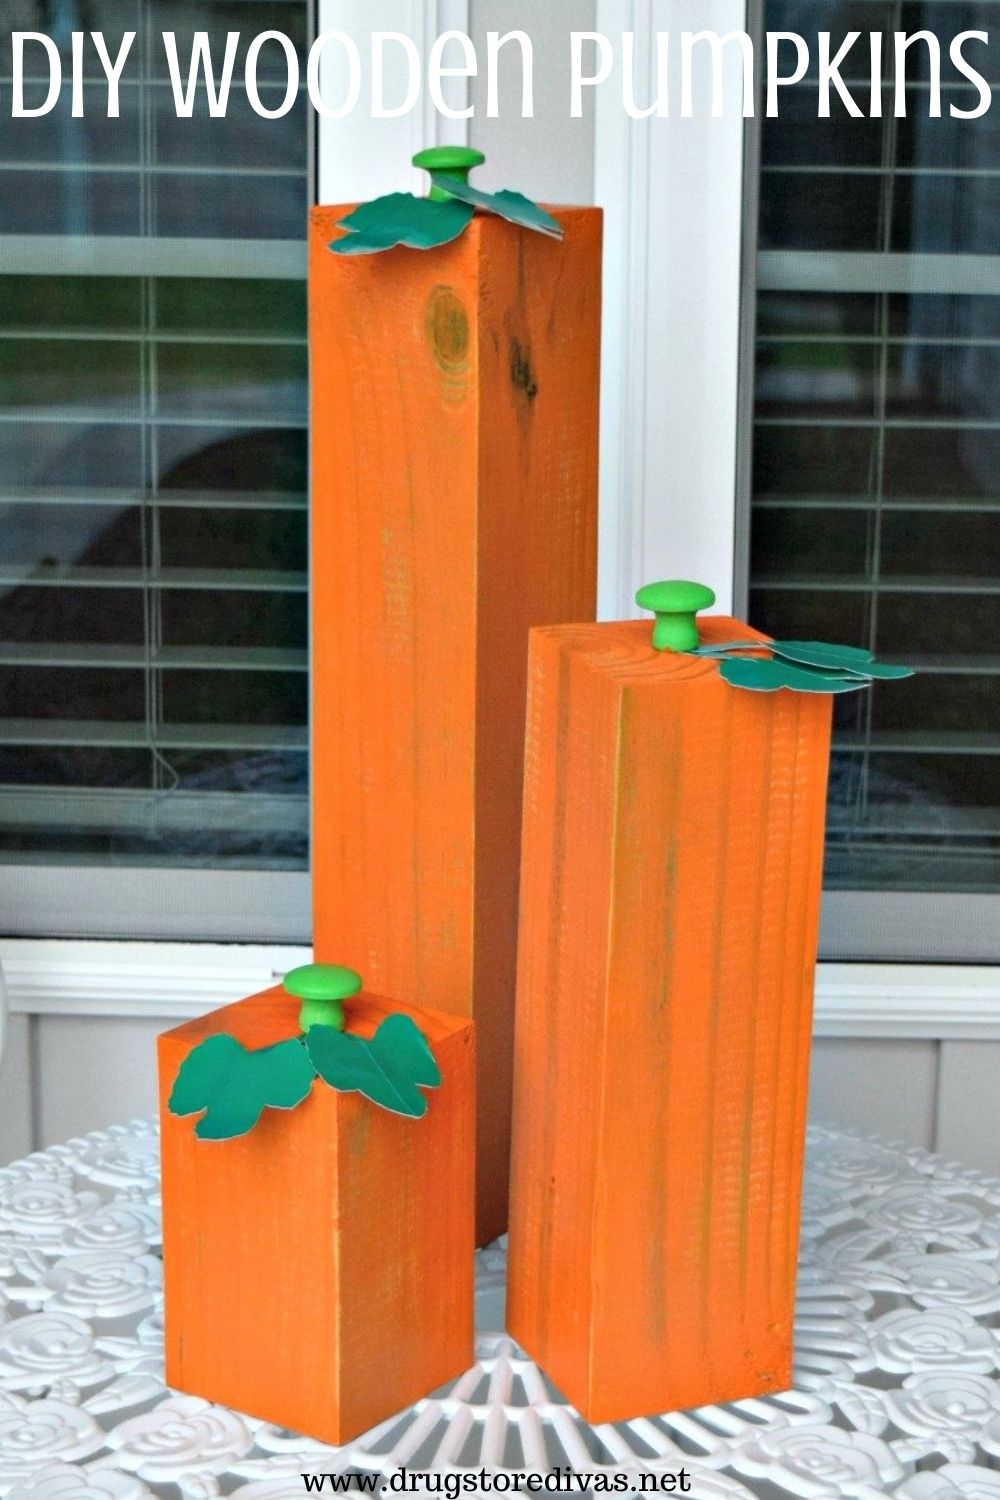 Three DIY Wooden Pumpkins.